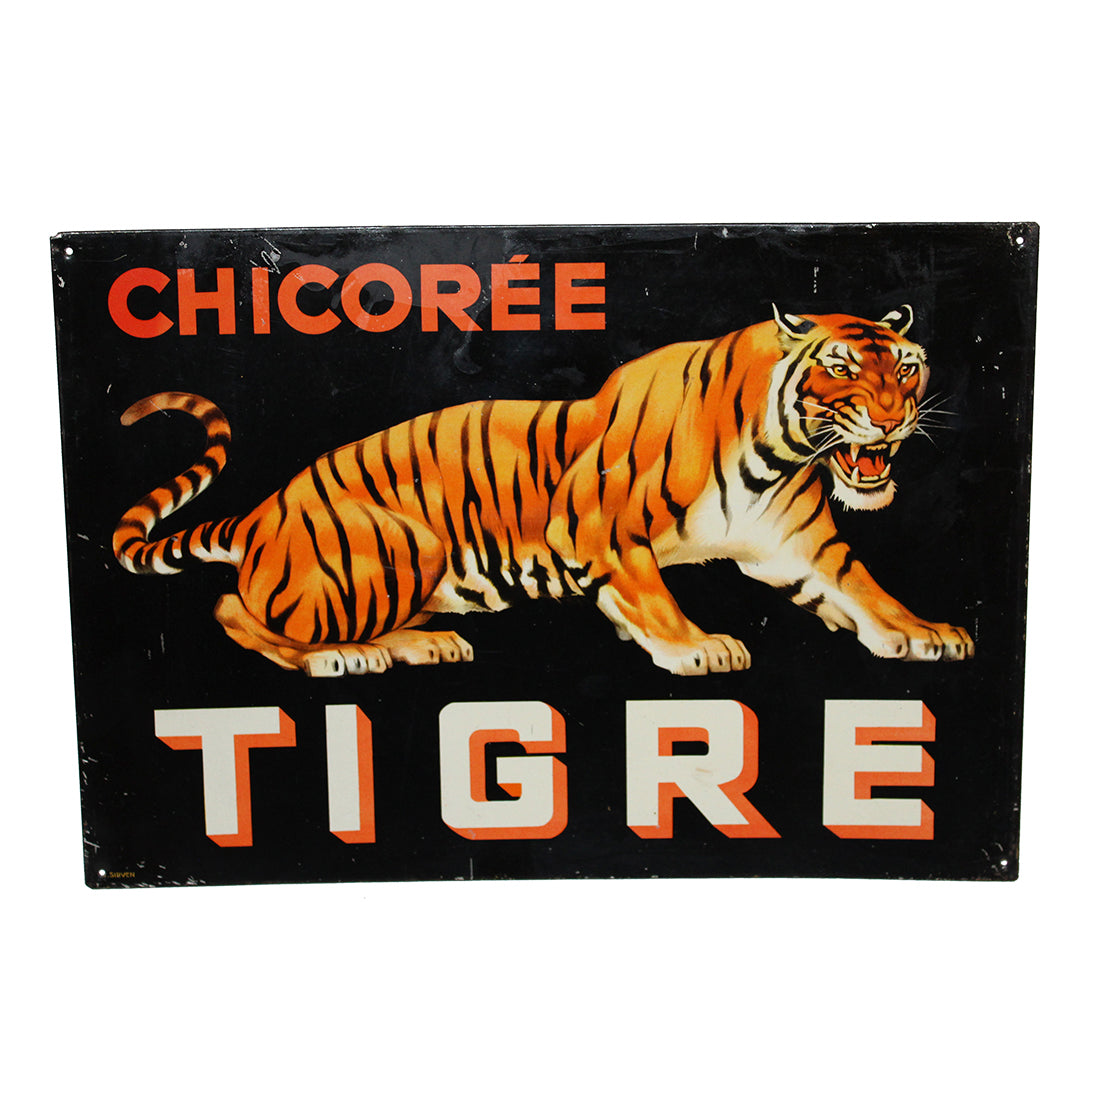 Plaque émaillée Miror, ancienne plaque publicitaire vintage